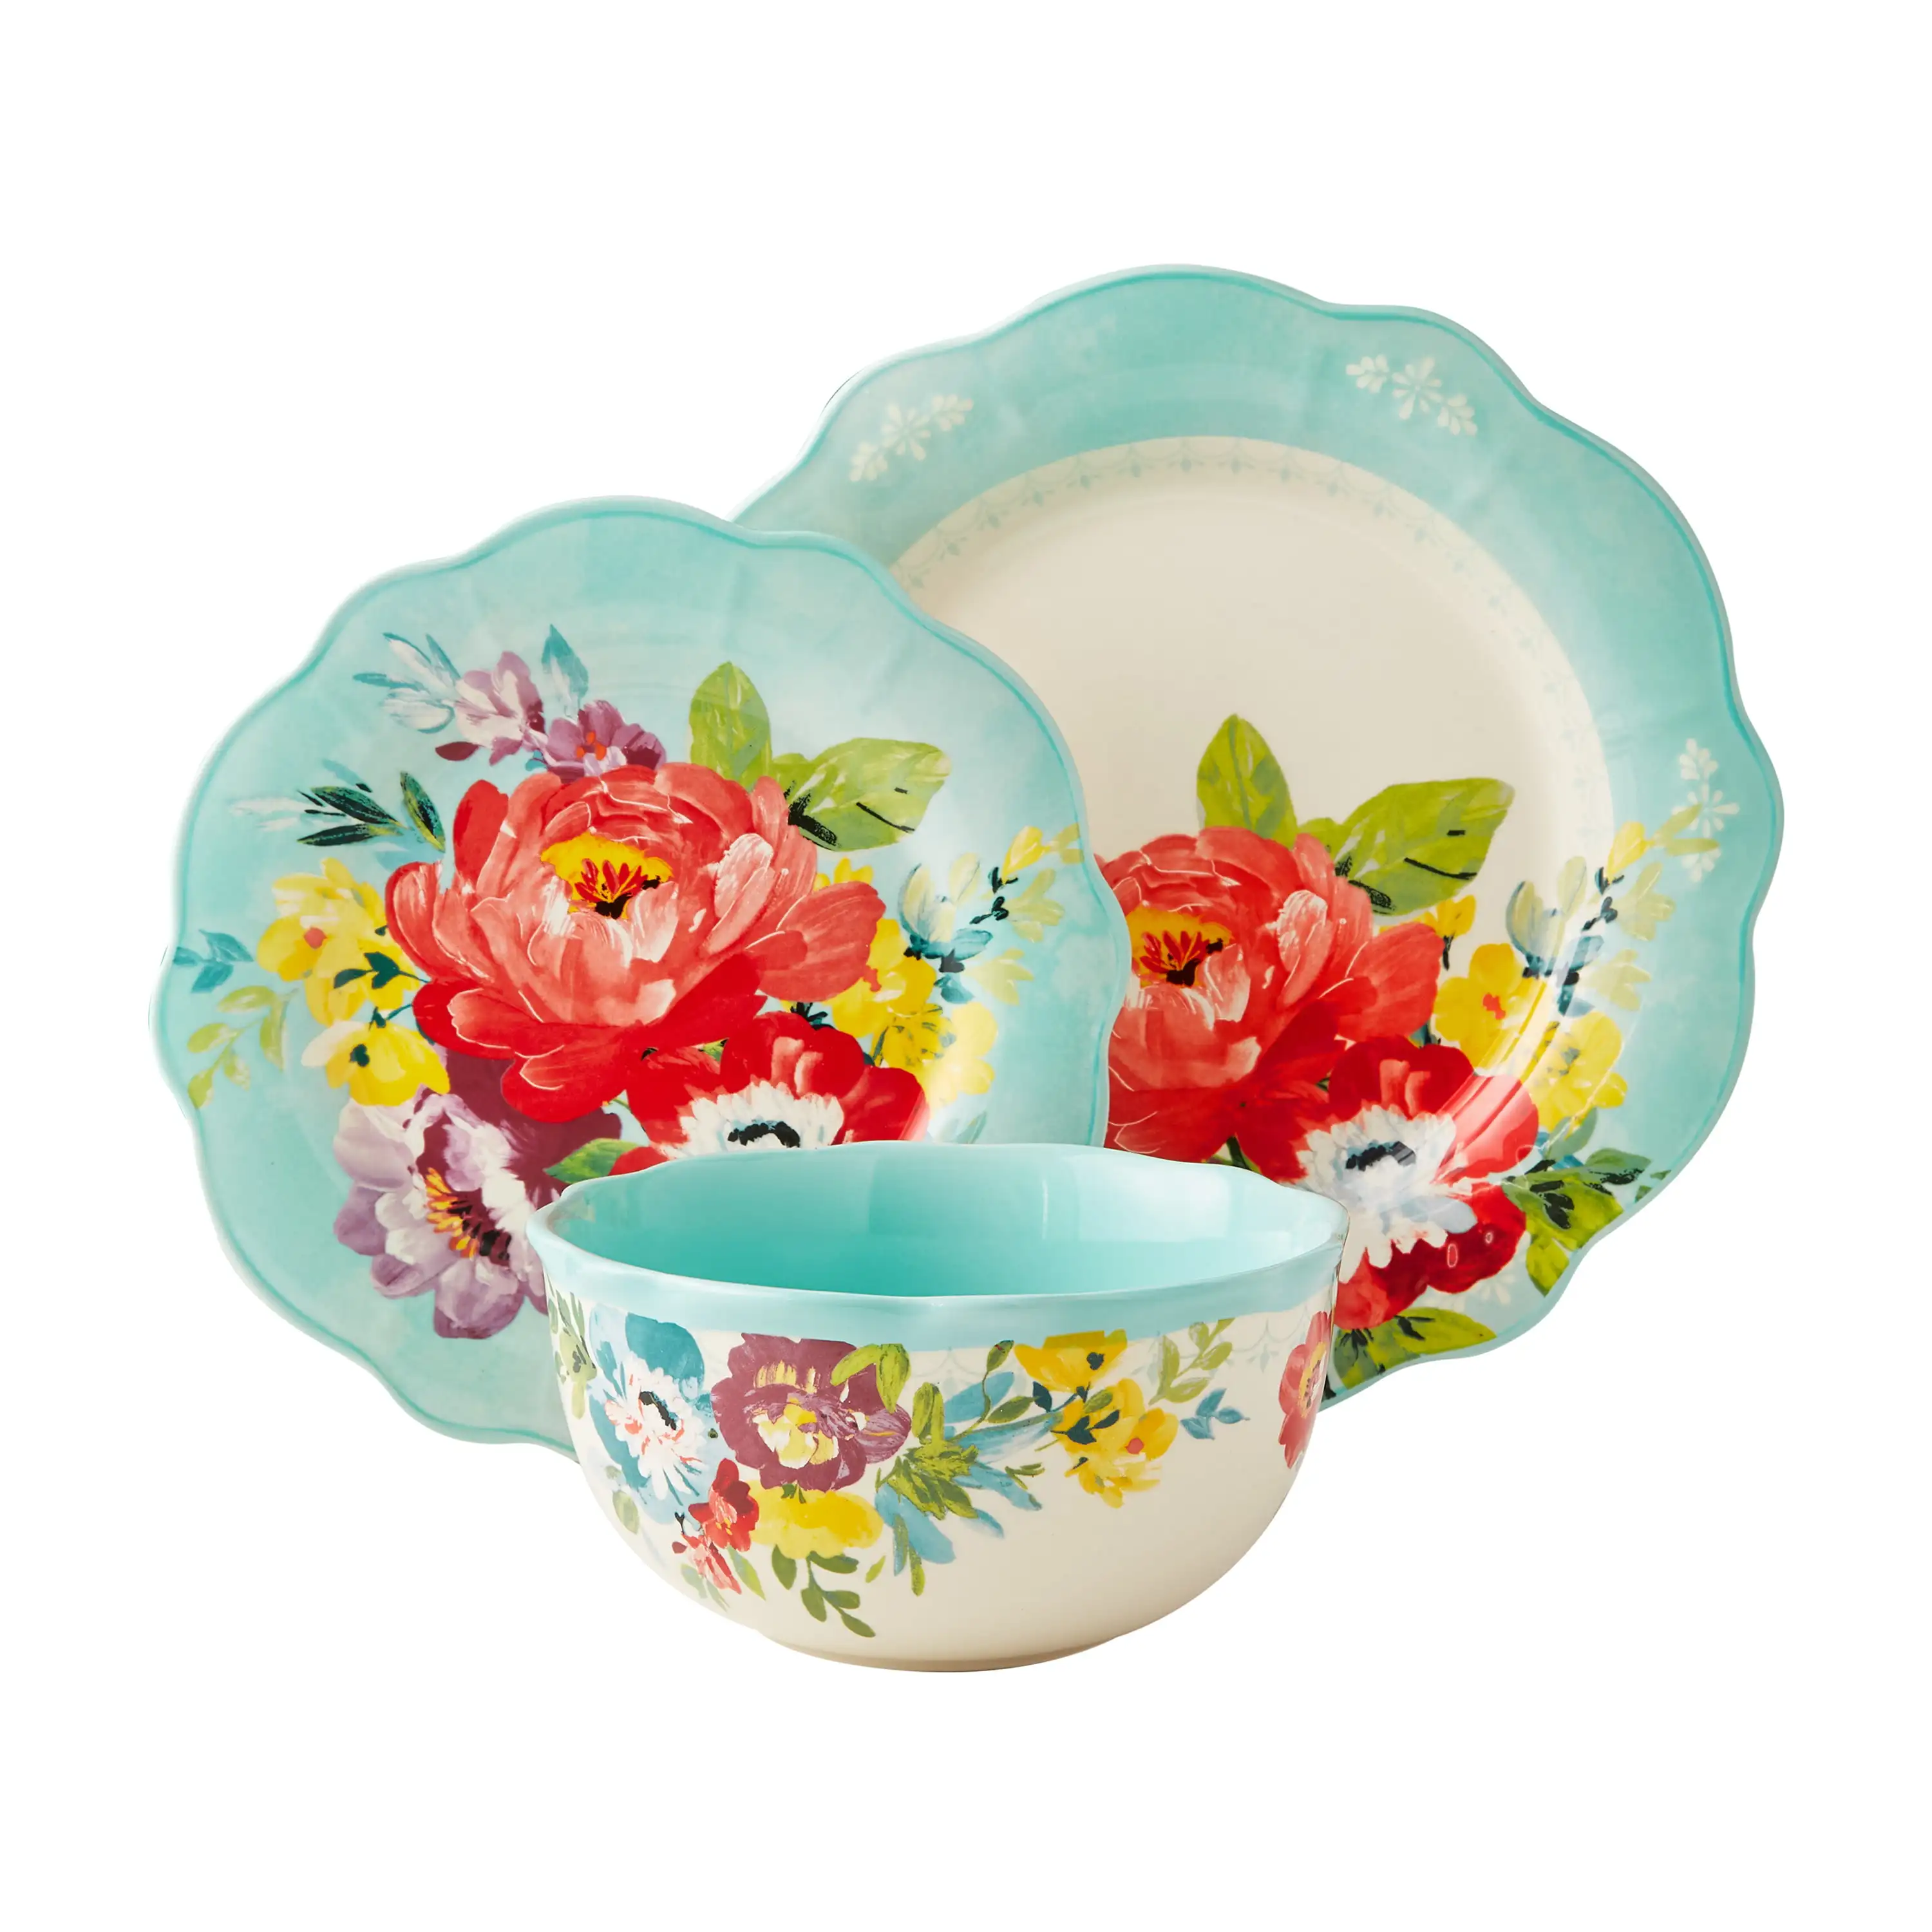 

Пионерская женщина, сладкий романтический цвет, набор посуды из 12 предметов